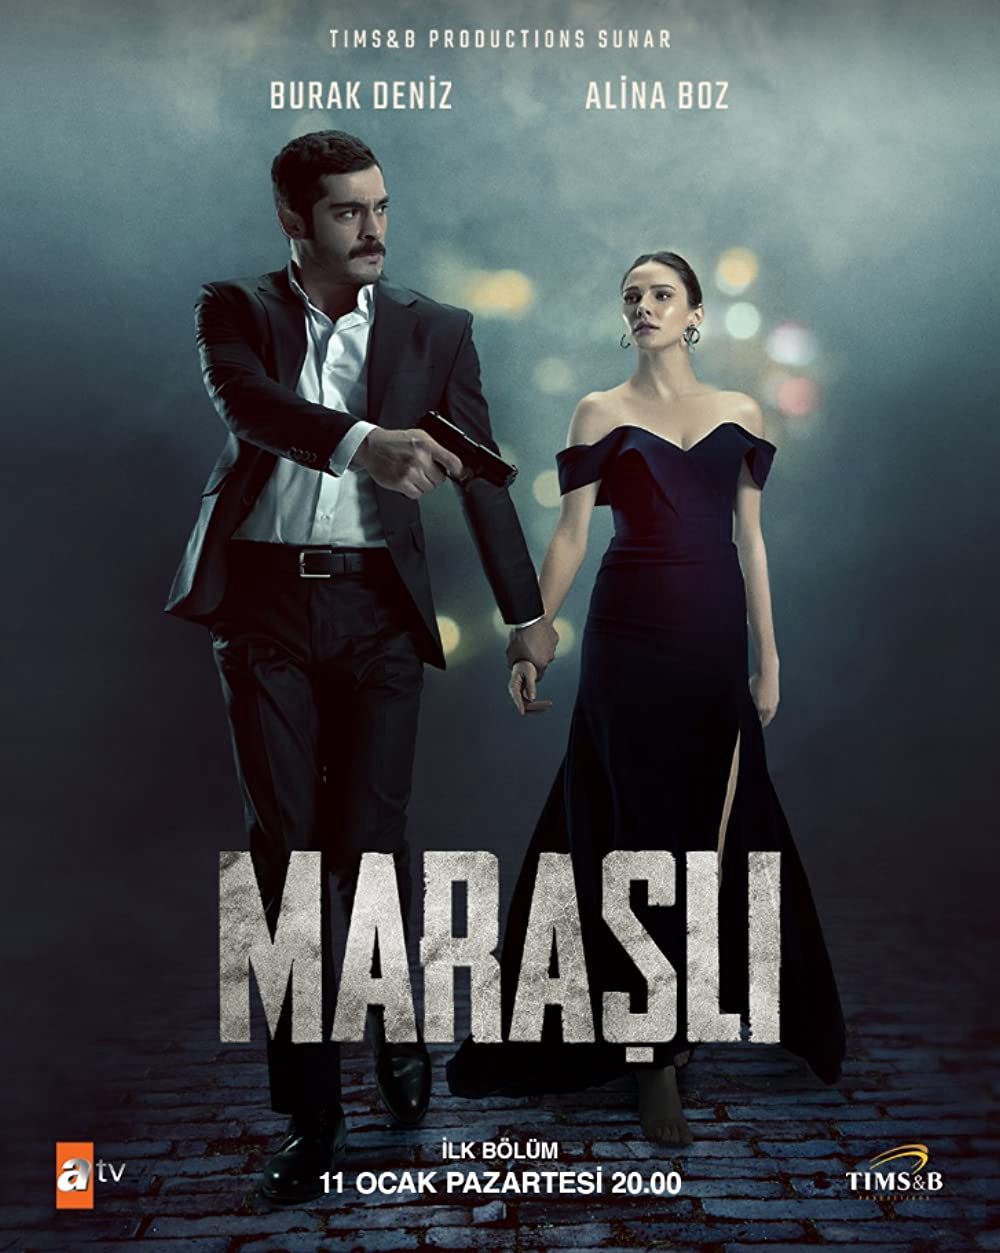 Marasli